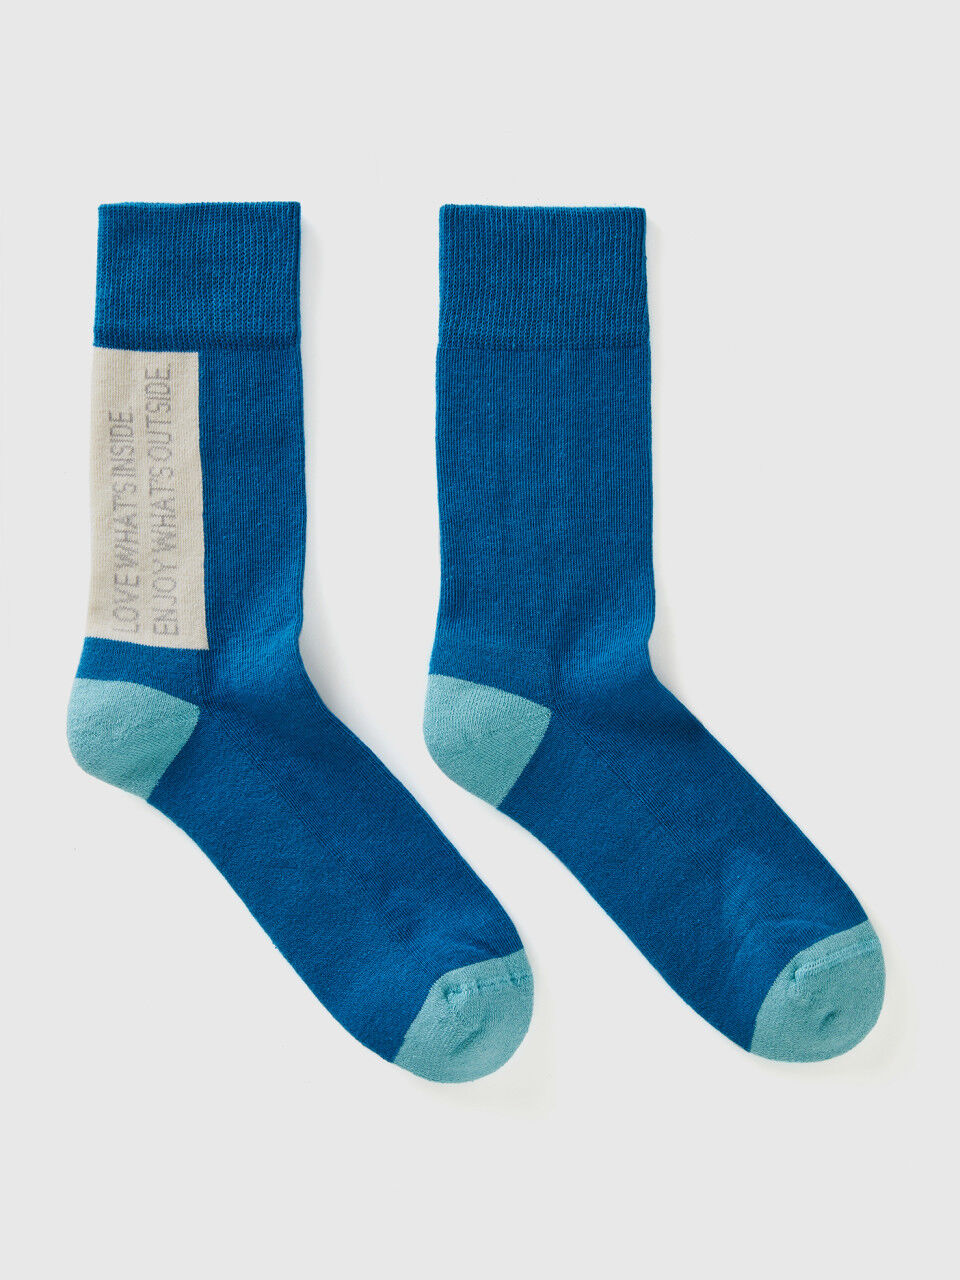 Socken aus stretchiger Bio-Baumwolle